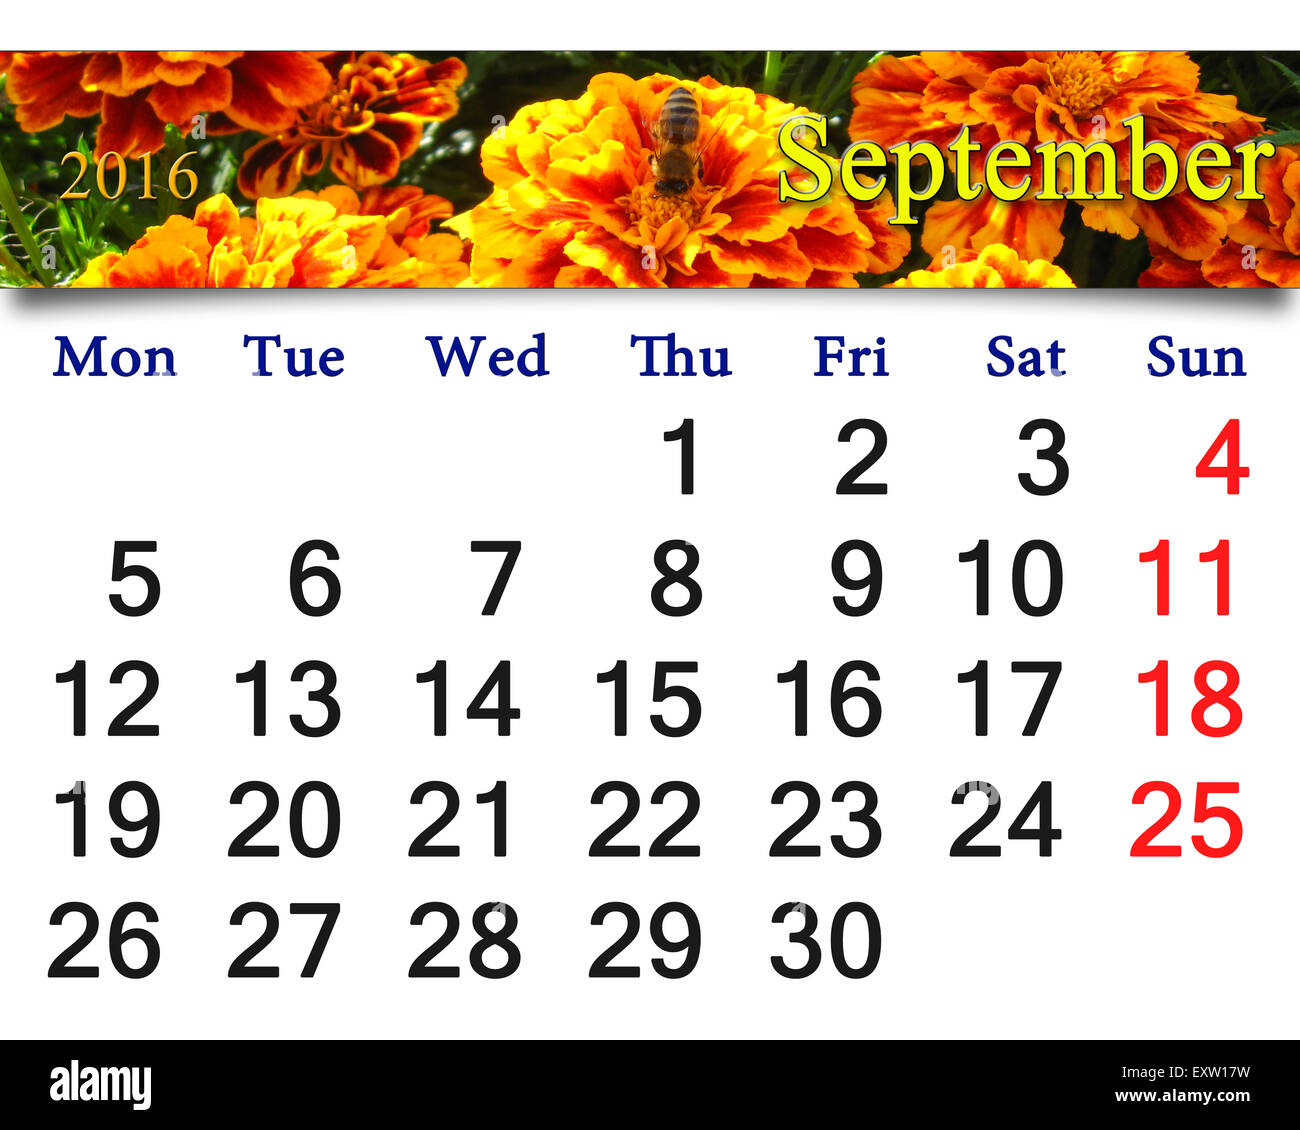 Calendrier de septembre 2016 avec image de fleurs de tagète. Calendrier pour l'impression et utilisation dans la vie de bureau. Banque D'Images